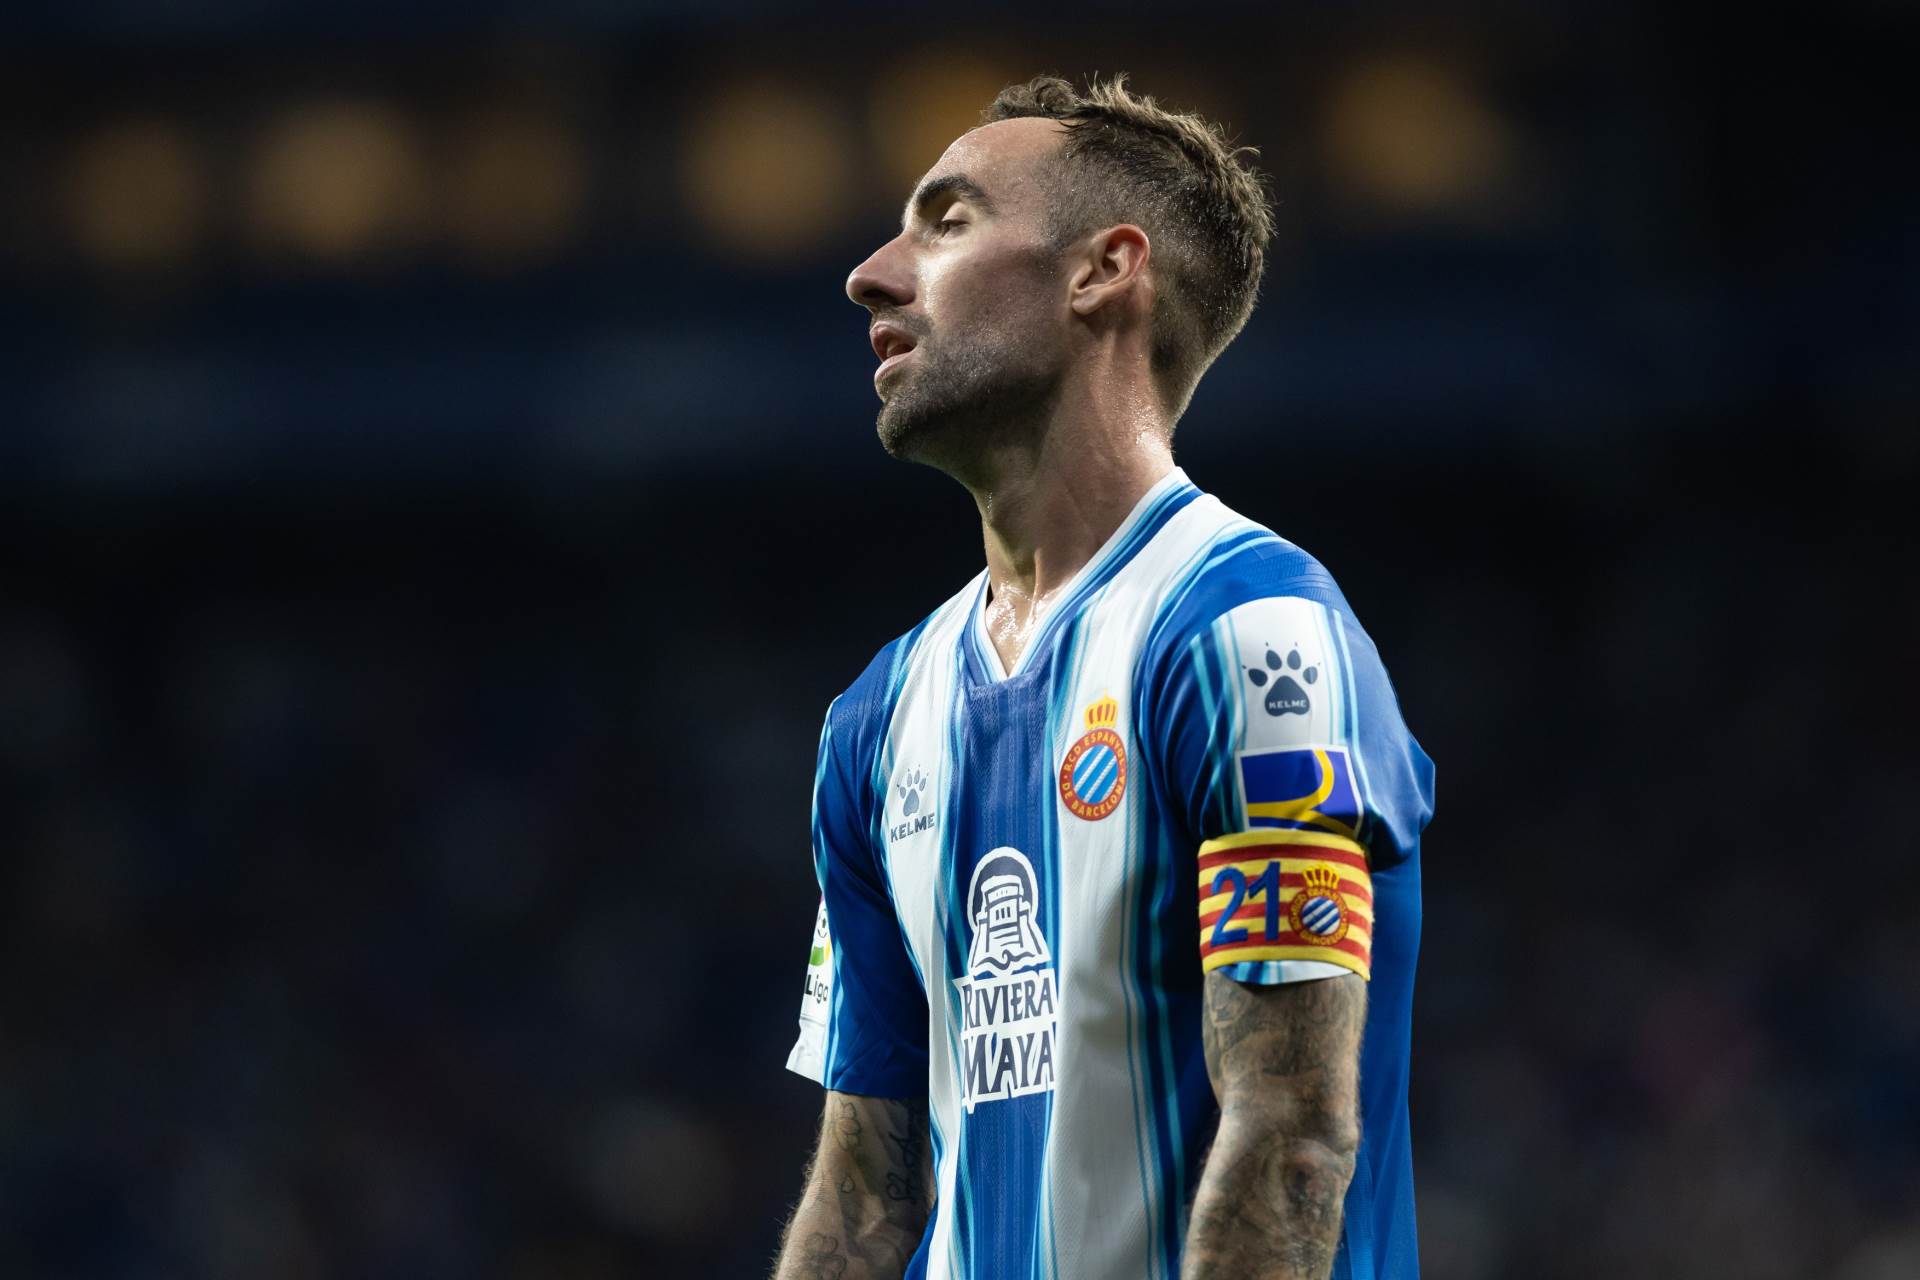  Španski fudbaler serđi Darder nije želeo u Barselonu jer mu je to gradski rival 